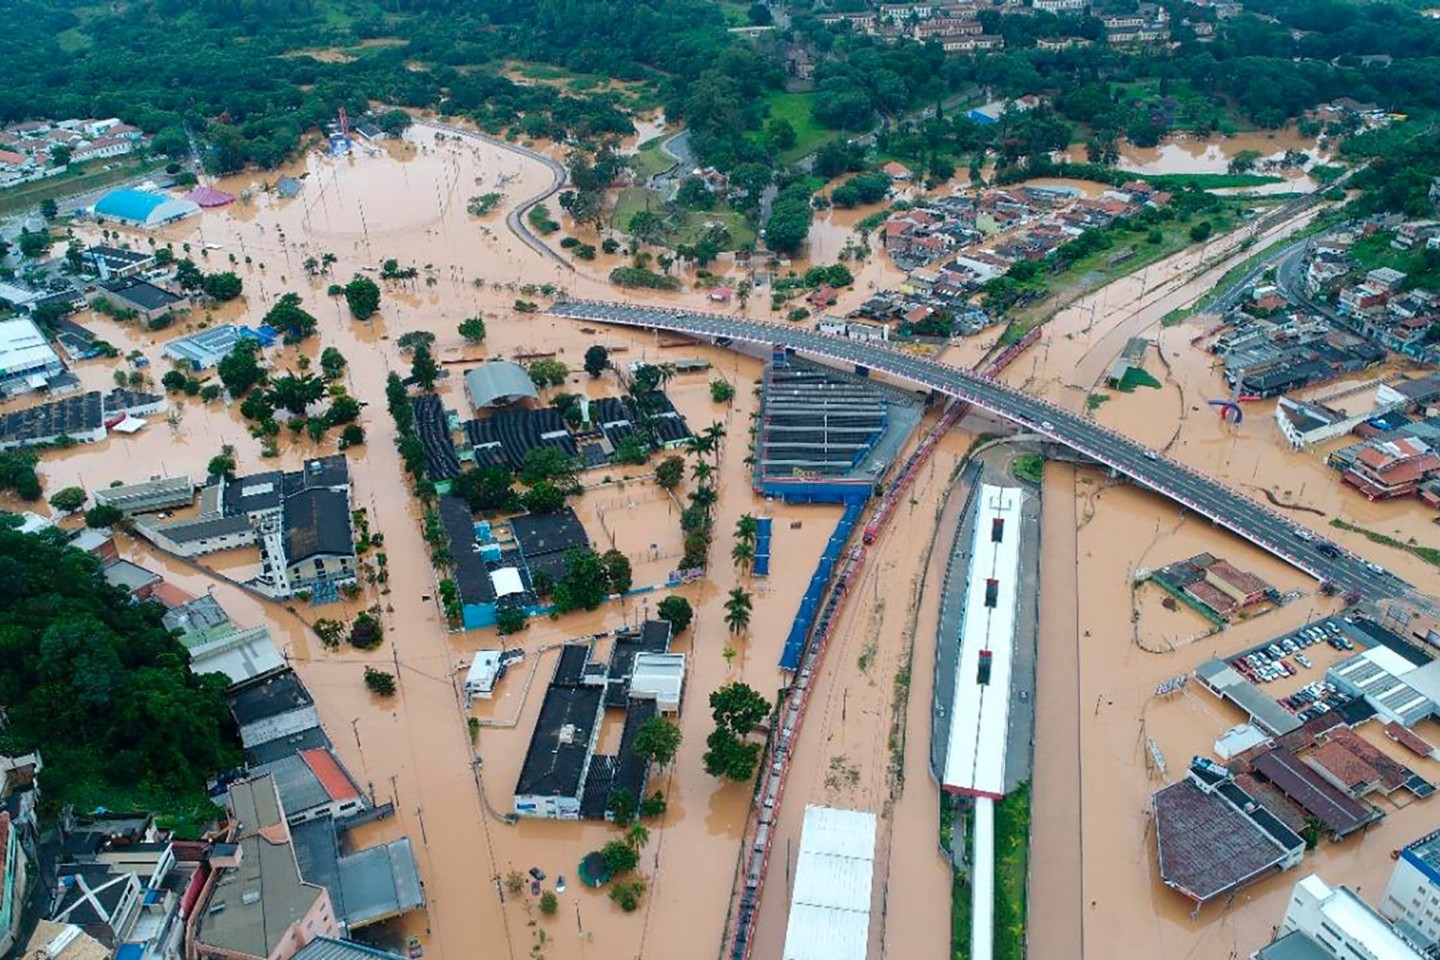 Blick auf Franco da Rocha in Brasilien. Die Gegend ist nach schweren Regenfällen überflutet.